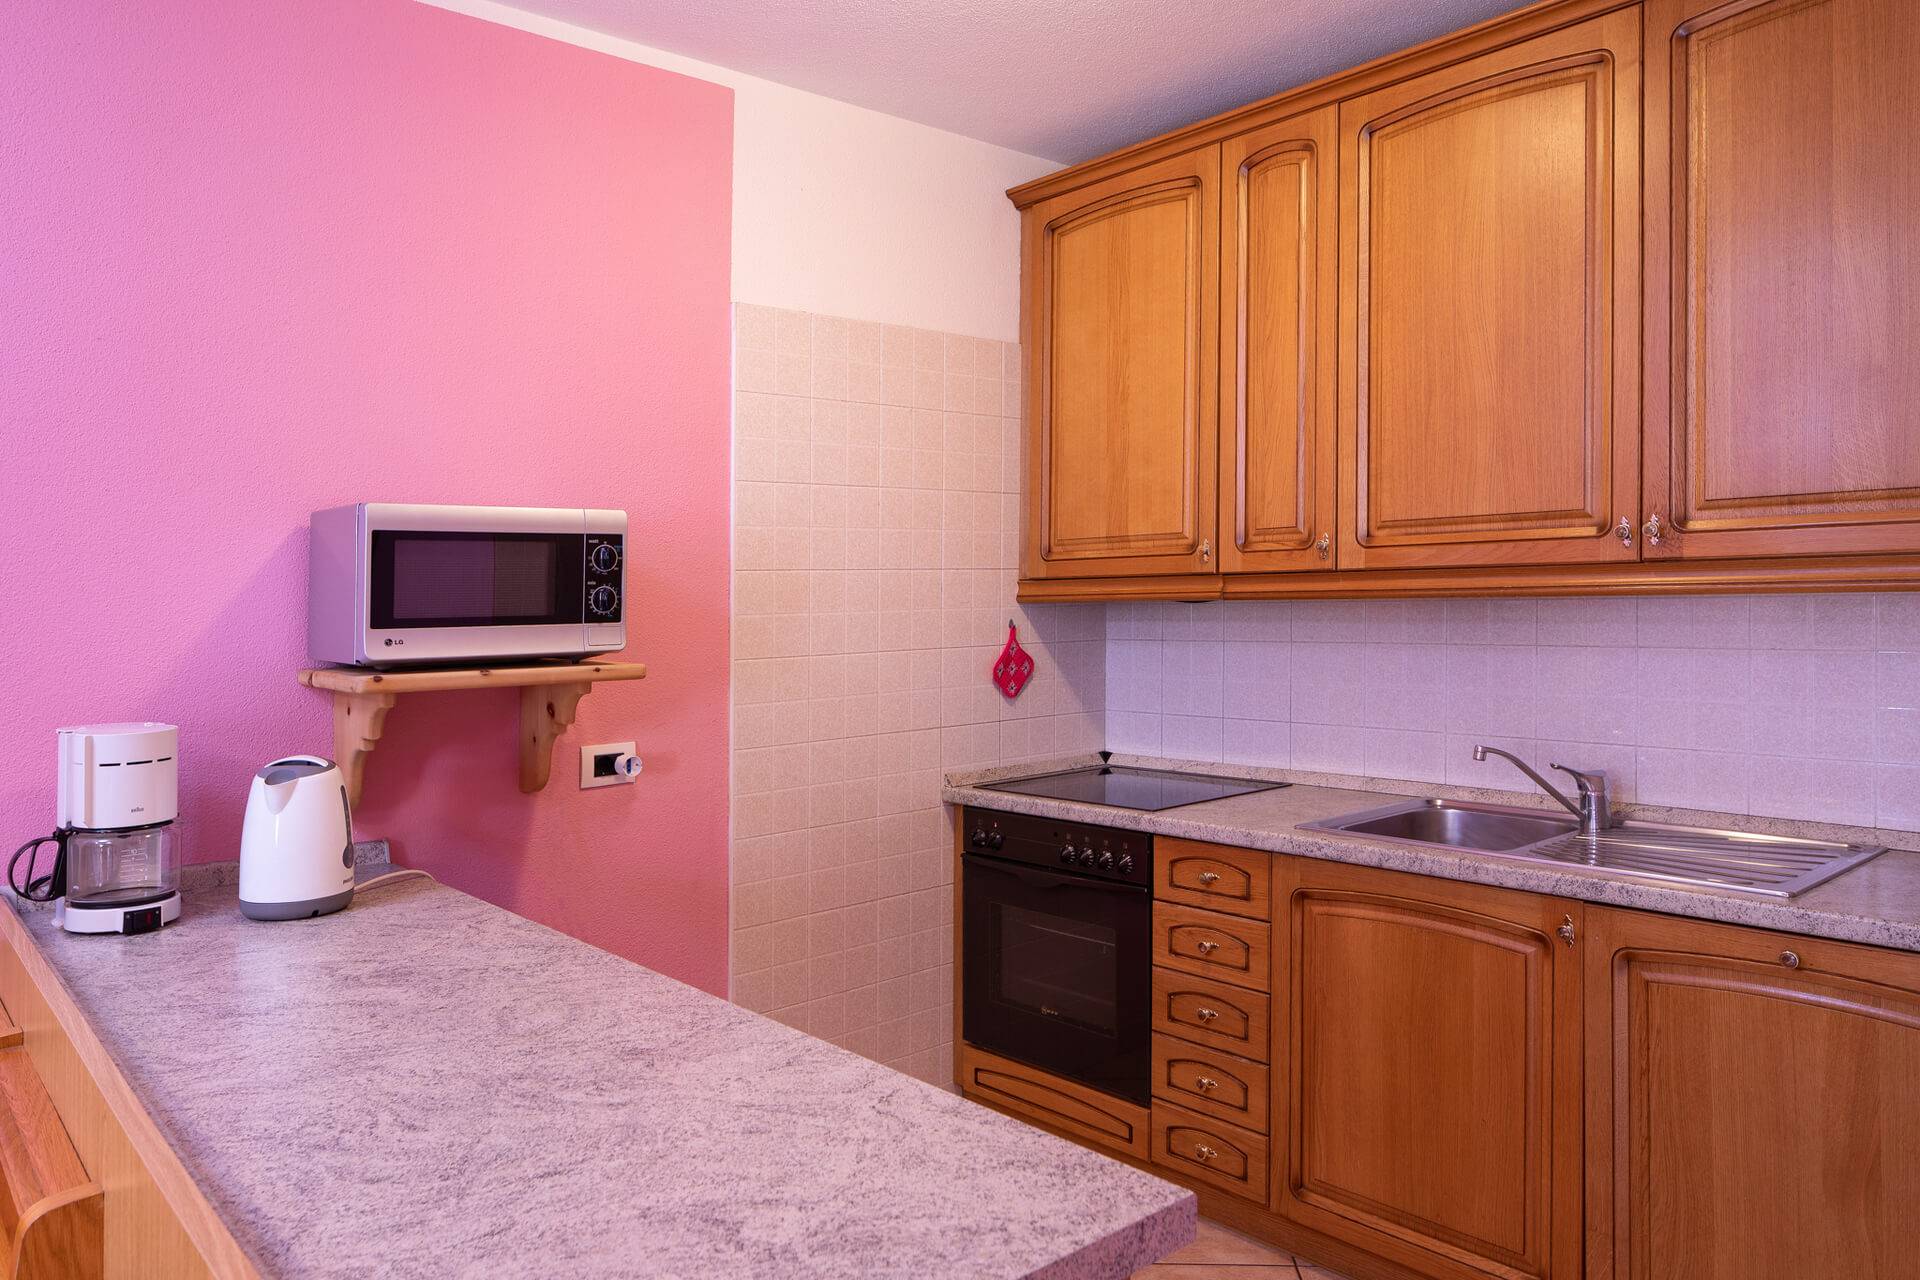 Wohnung in Livigno mit Wohnzimmer, Küche, Bad, Balkon und Schlafzimmer